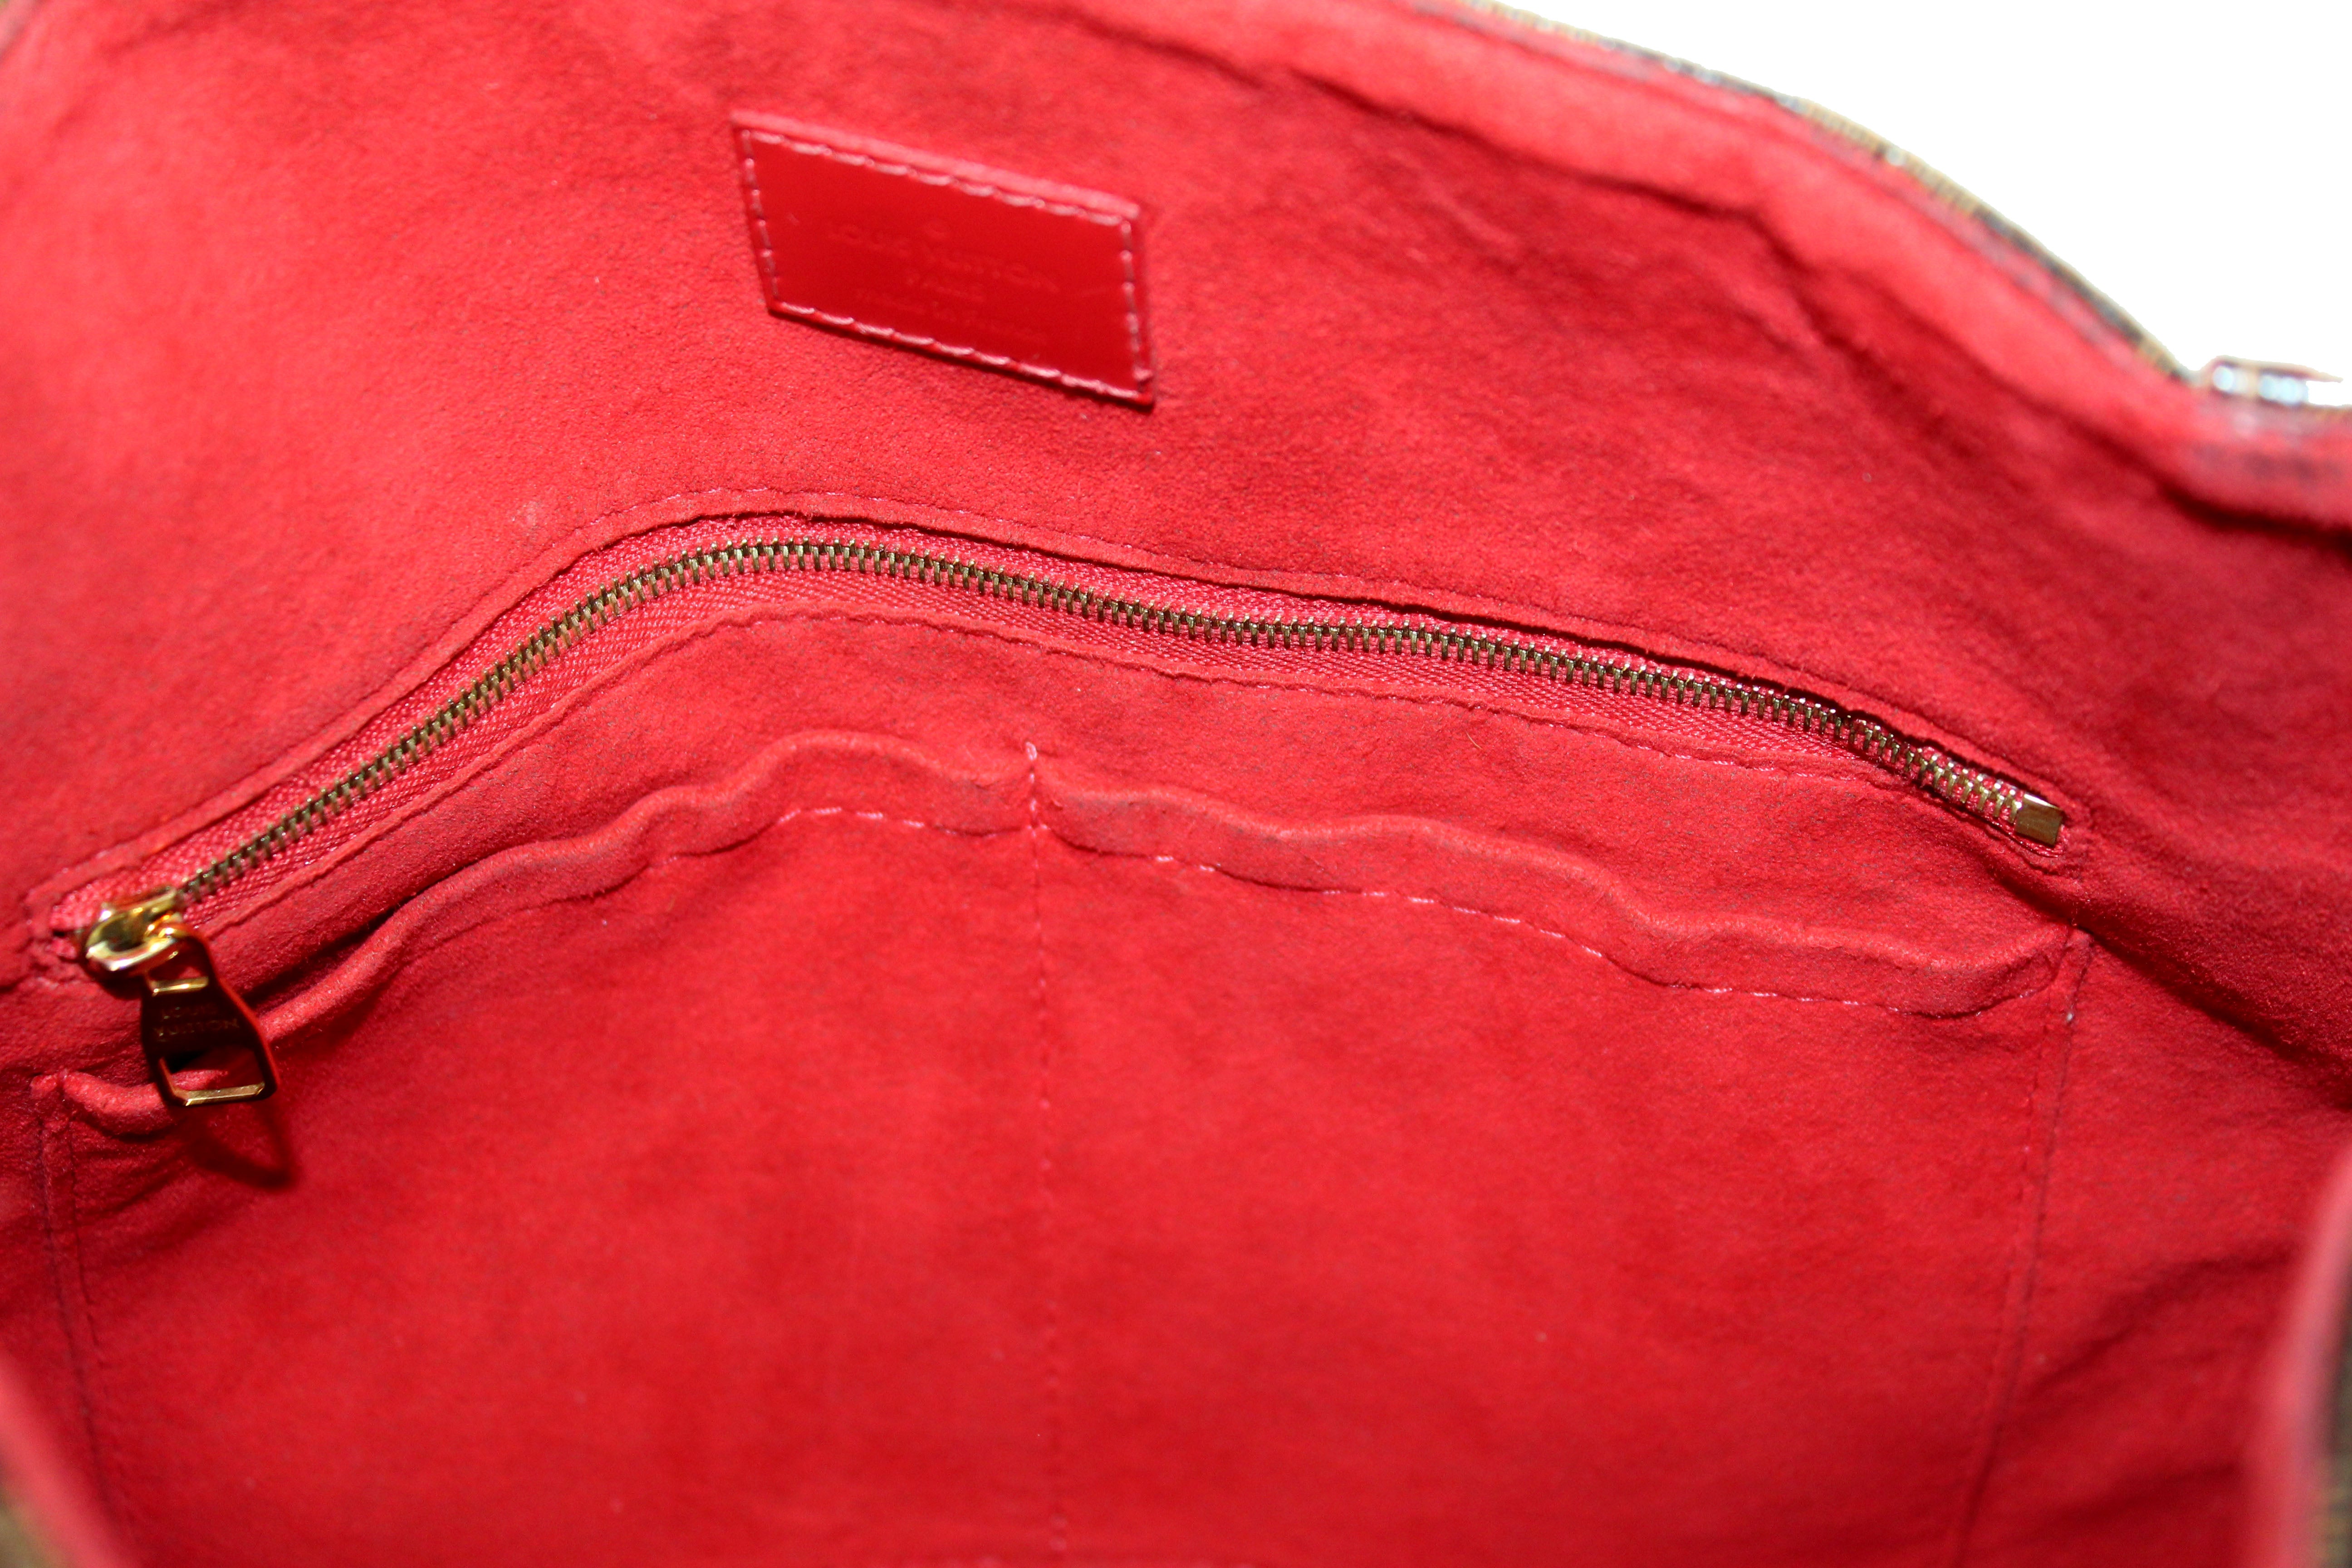 Authentic Louis Vuitton Caissa Damier Ebene x Red Hobo Shoulder